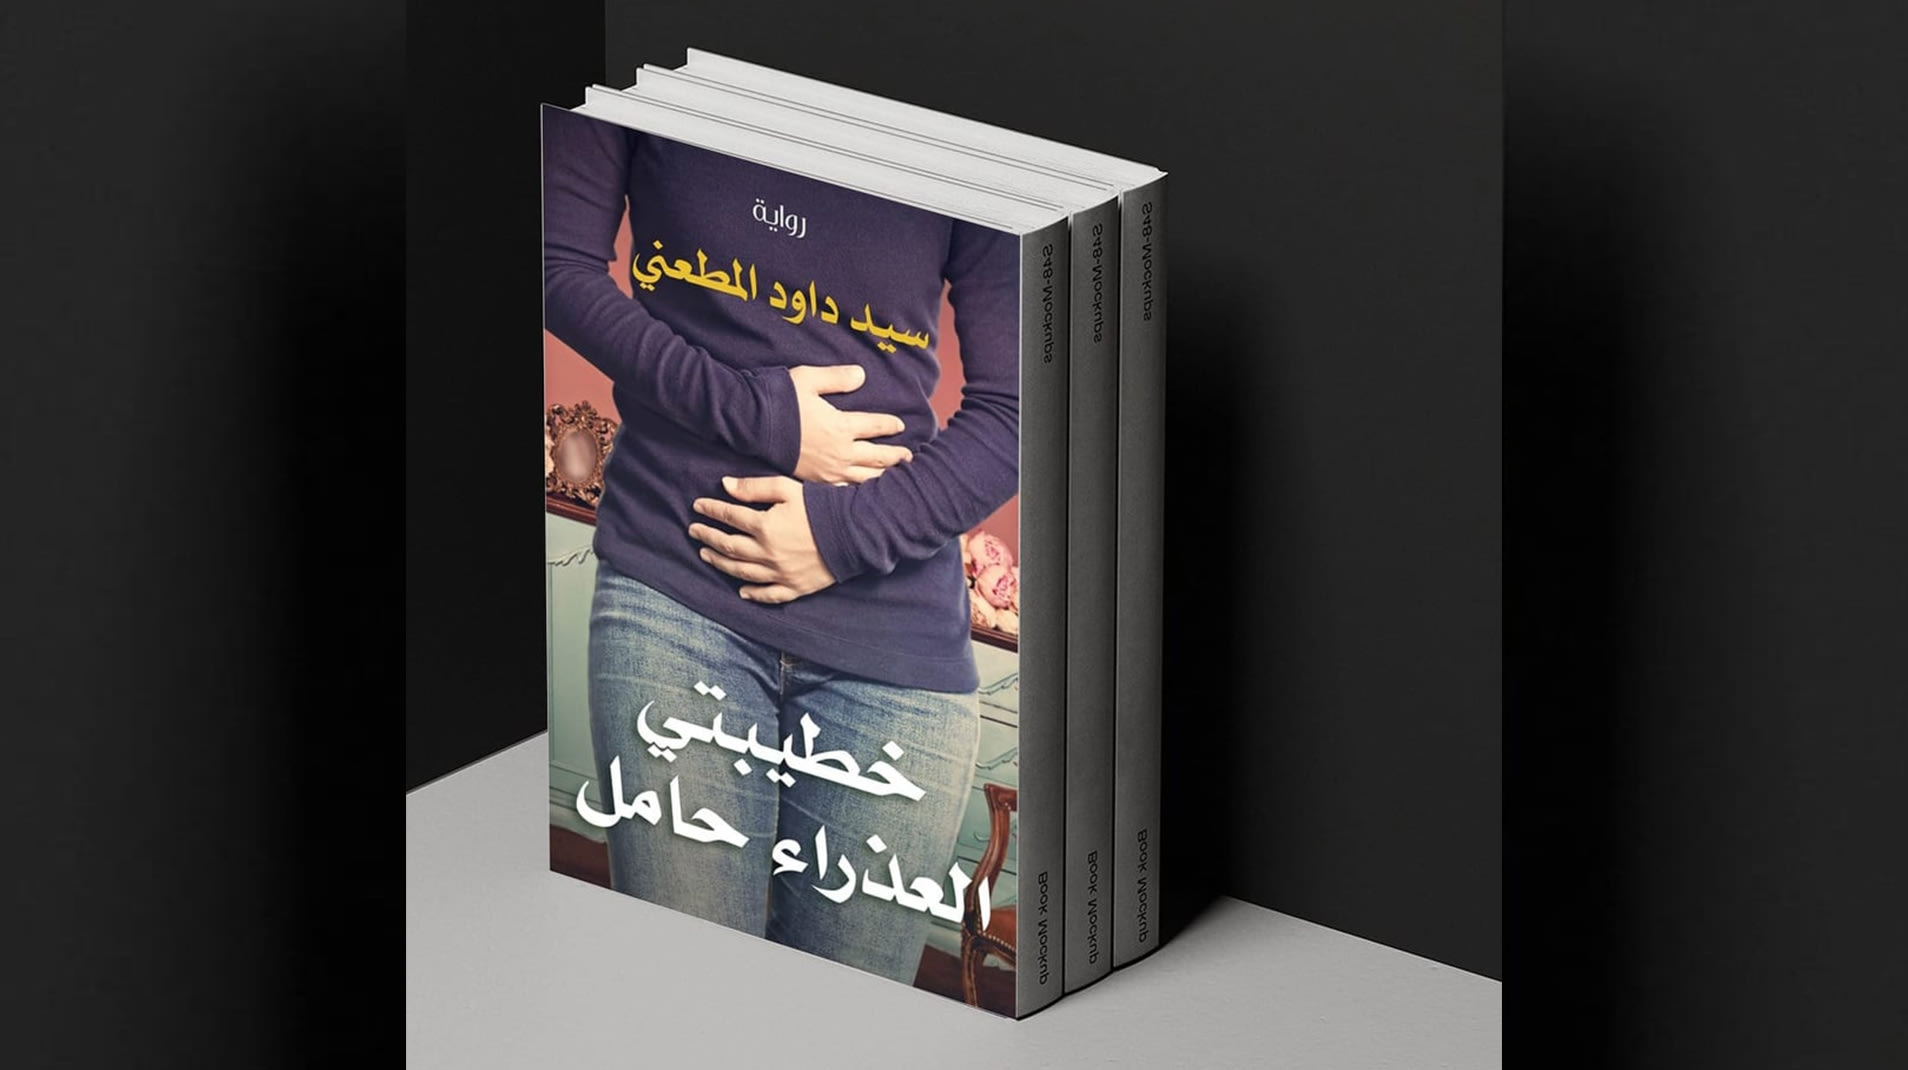 كاتب "خطيبتي العذراء حامل" يرد على الجدل الذي أثاره عنوان روايته بمصر